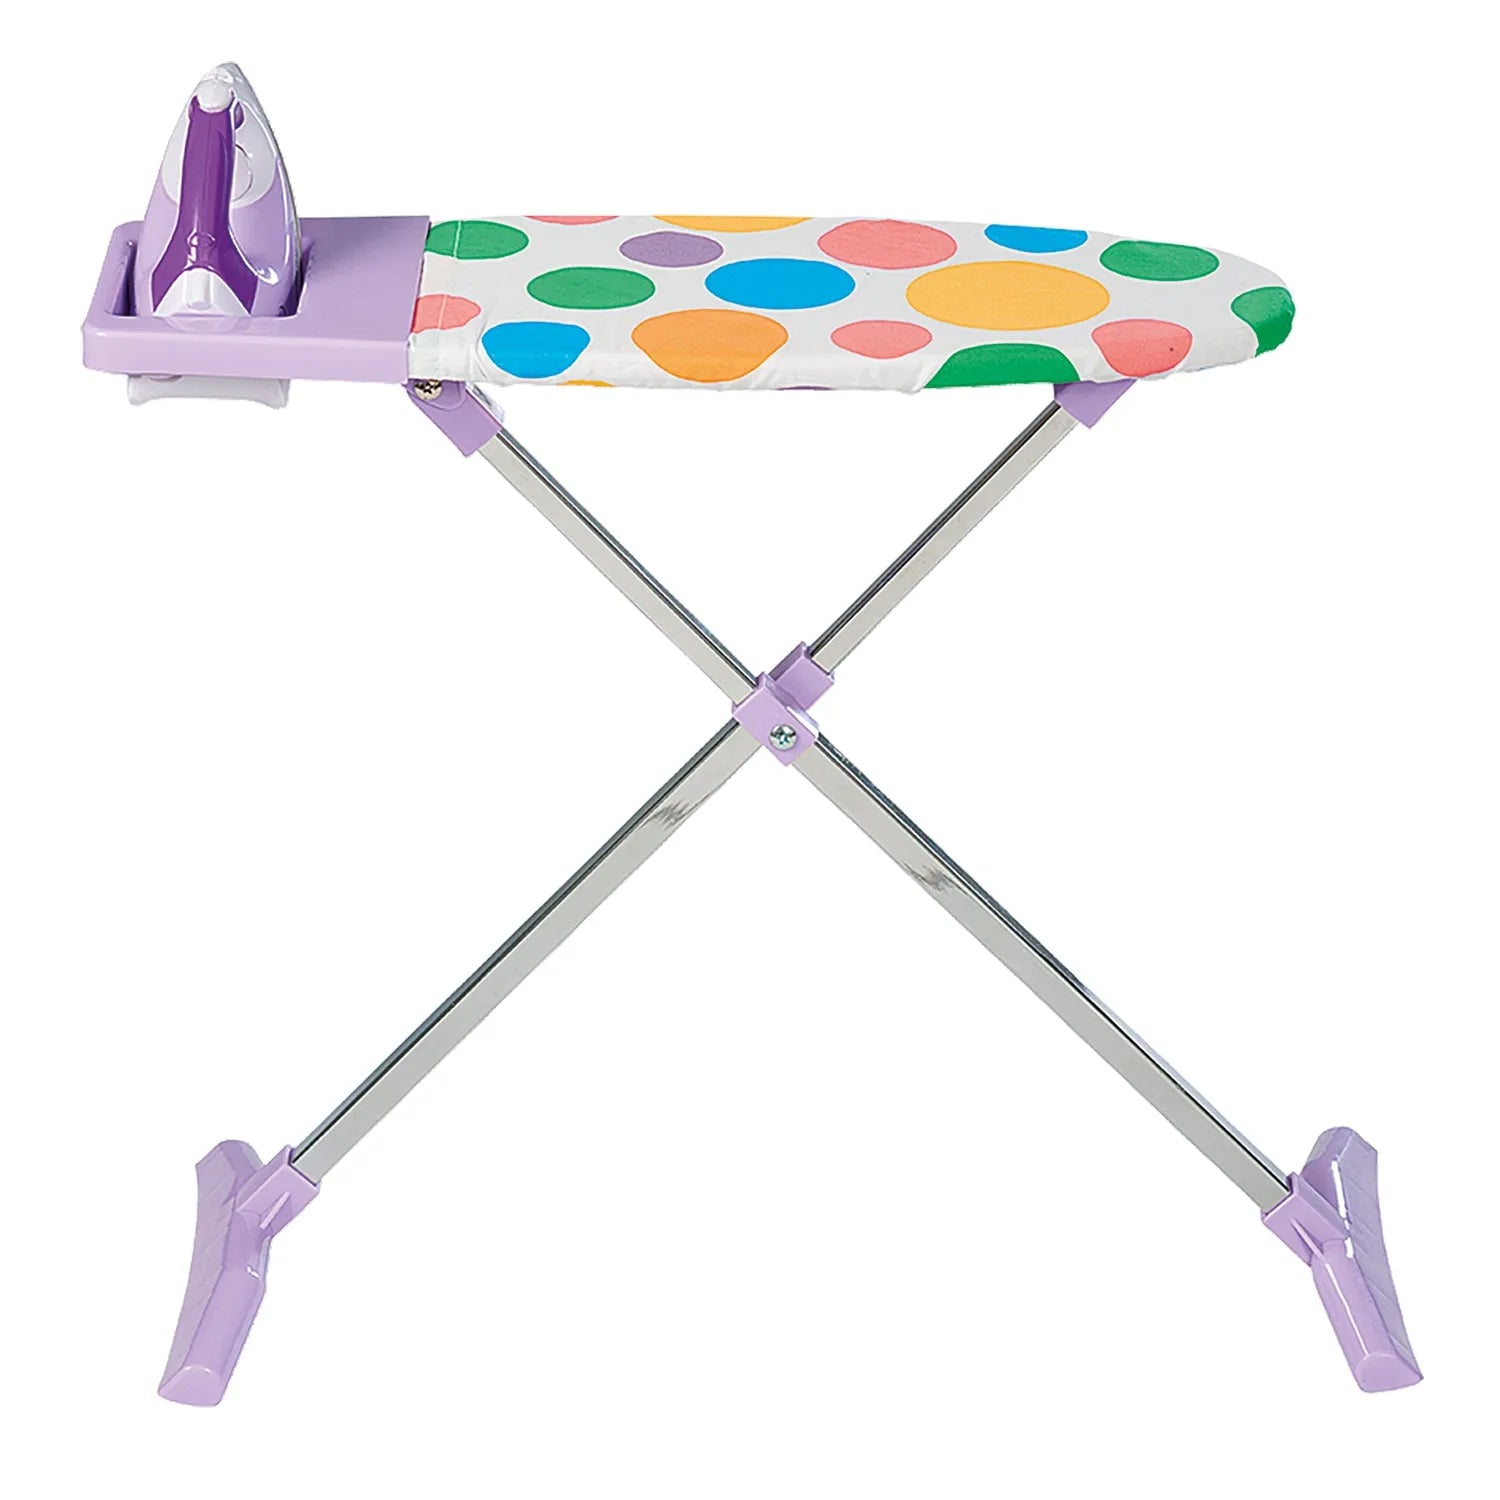 Casdon - Ironing Set Toy